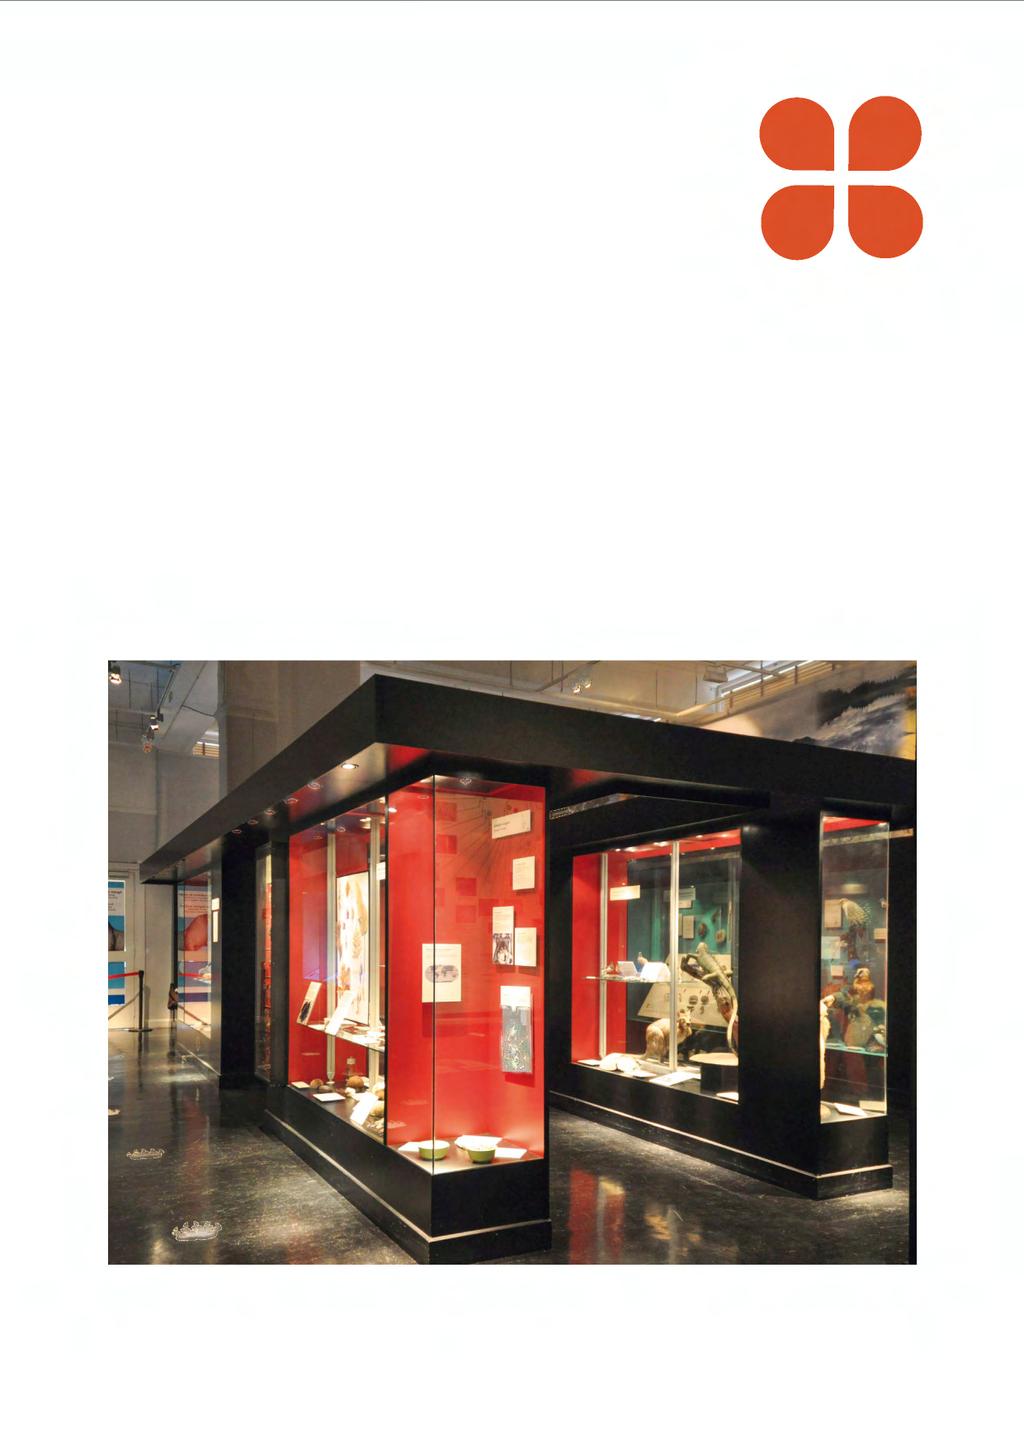 Vårda väl Riksantikvarieämbetet maj 2017 Material för utställning, förvaring och packning: Allmänna utgångspunkter Att välja material för utställning, förvaring och packning av museiföremål på ett